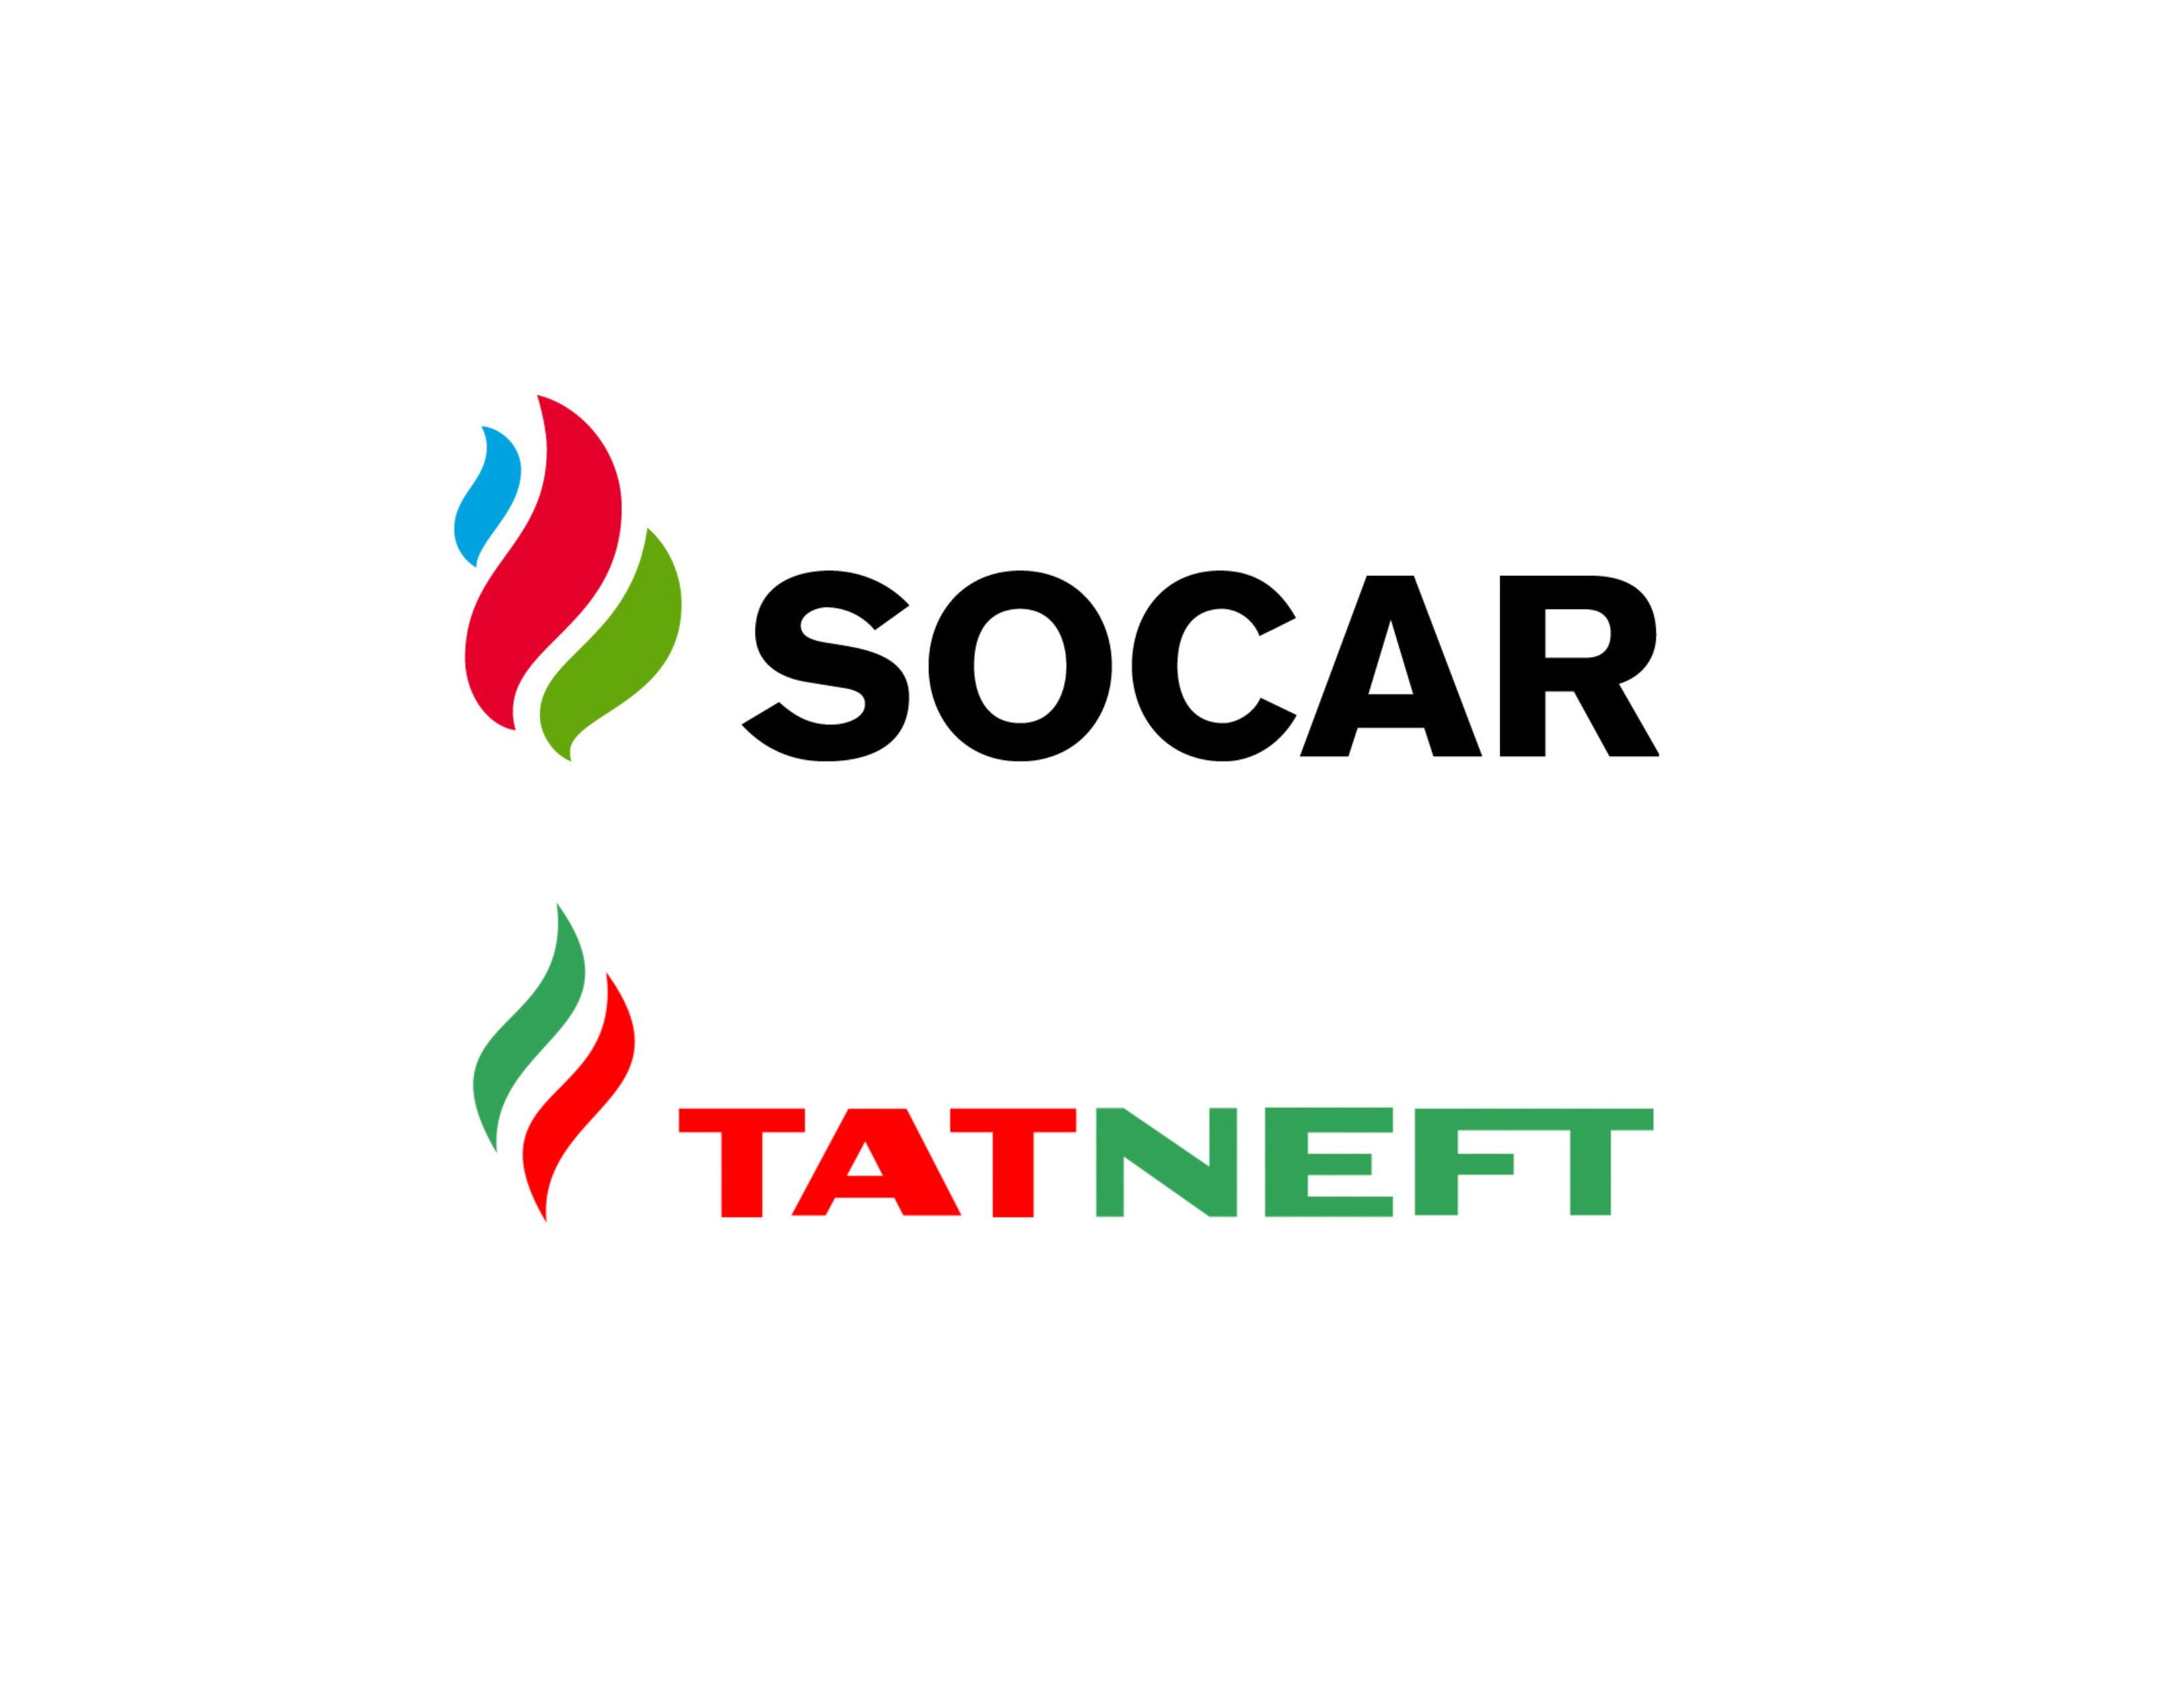 Socar portala giriş. SOCAR Азербайджан логотип. Логотип Сокар. Татнефть логотип. Российская компания SOCAR.